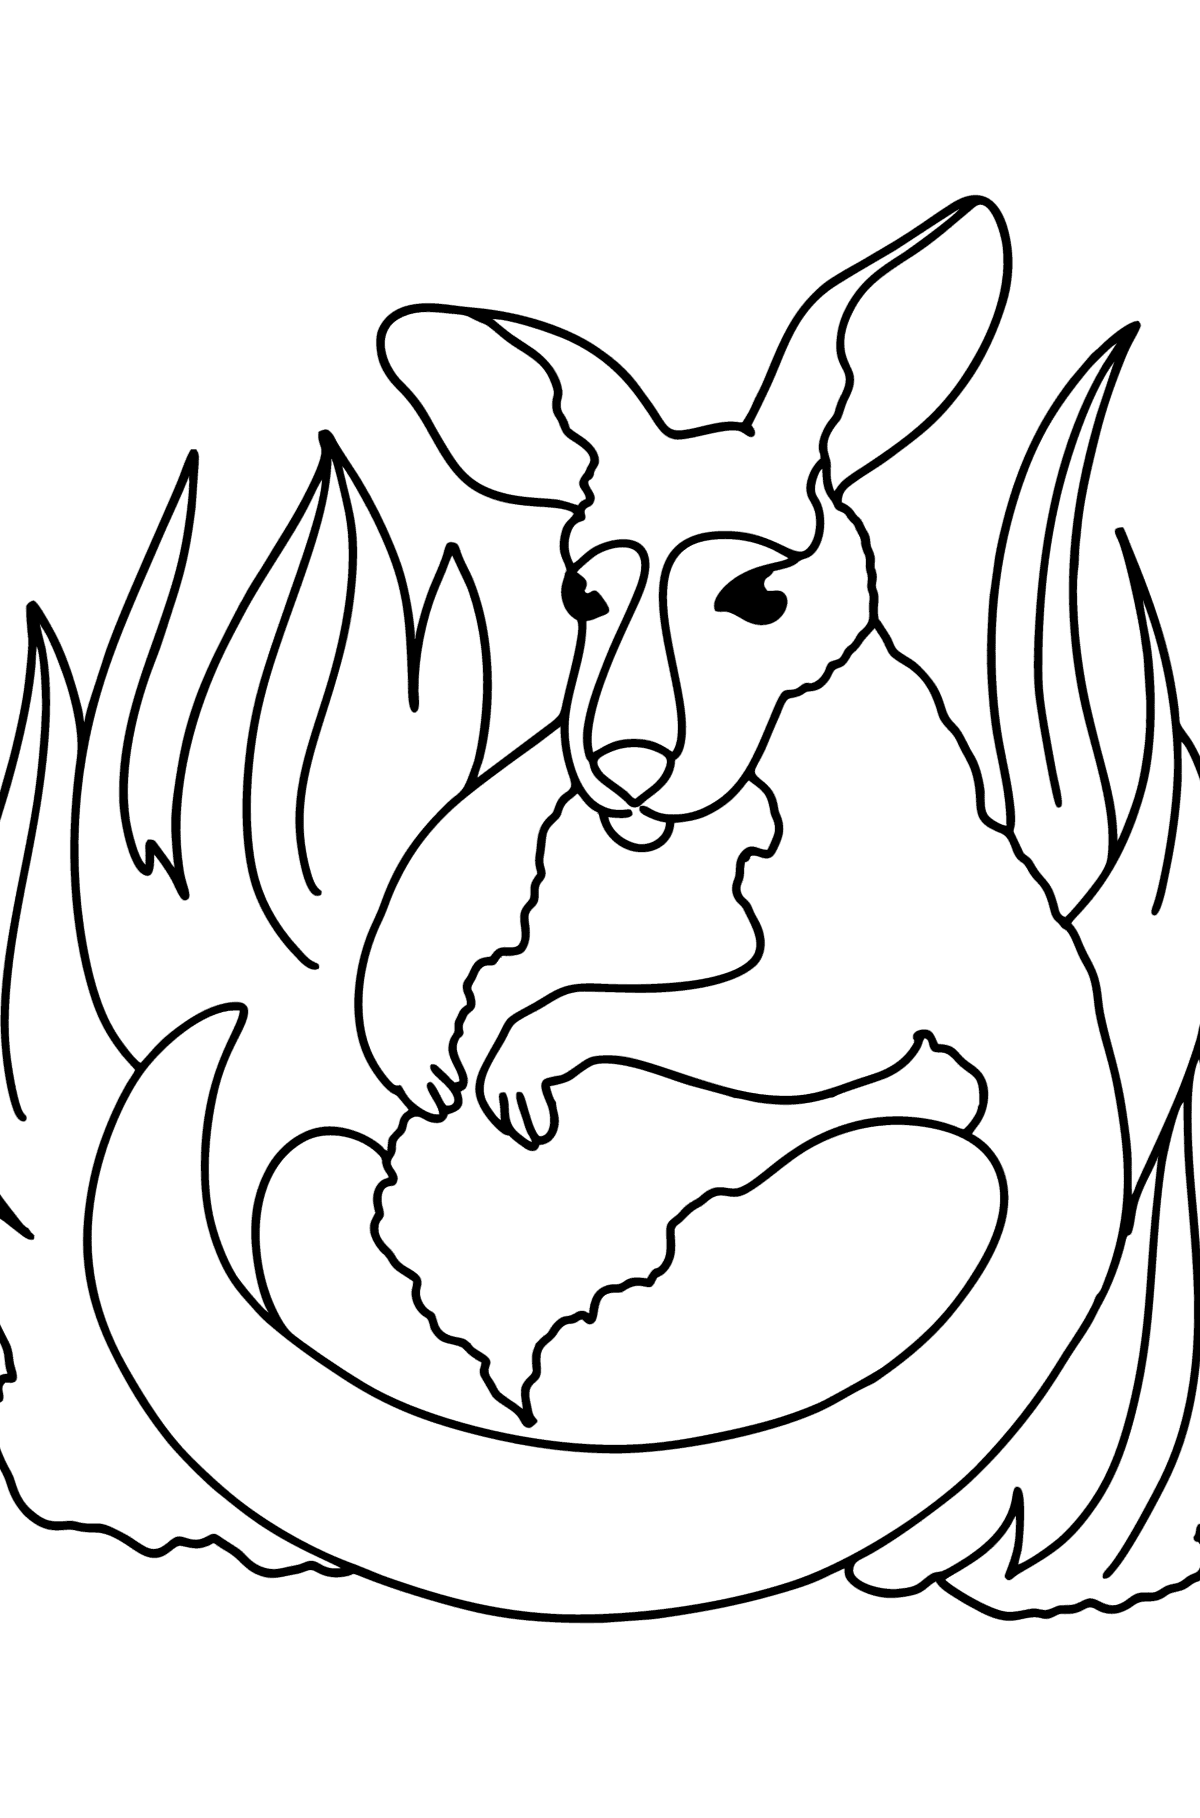 Tegning til fargelegging søt kengurubarn - Tegninger til fargelegging for barn